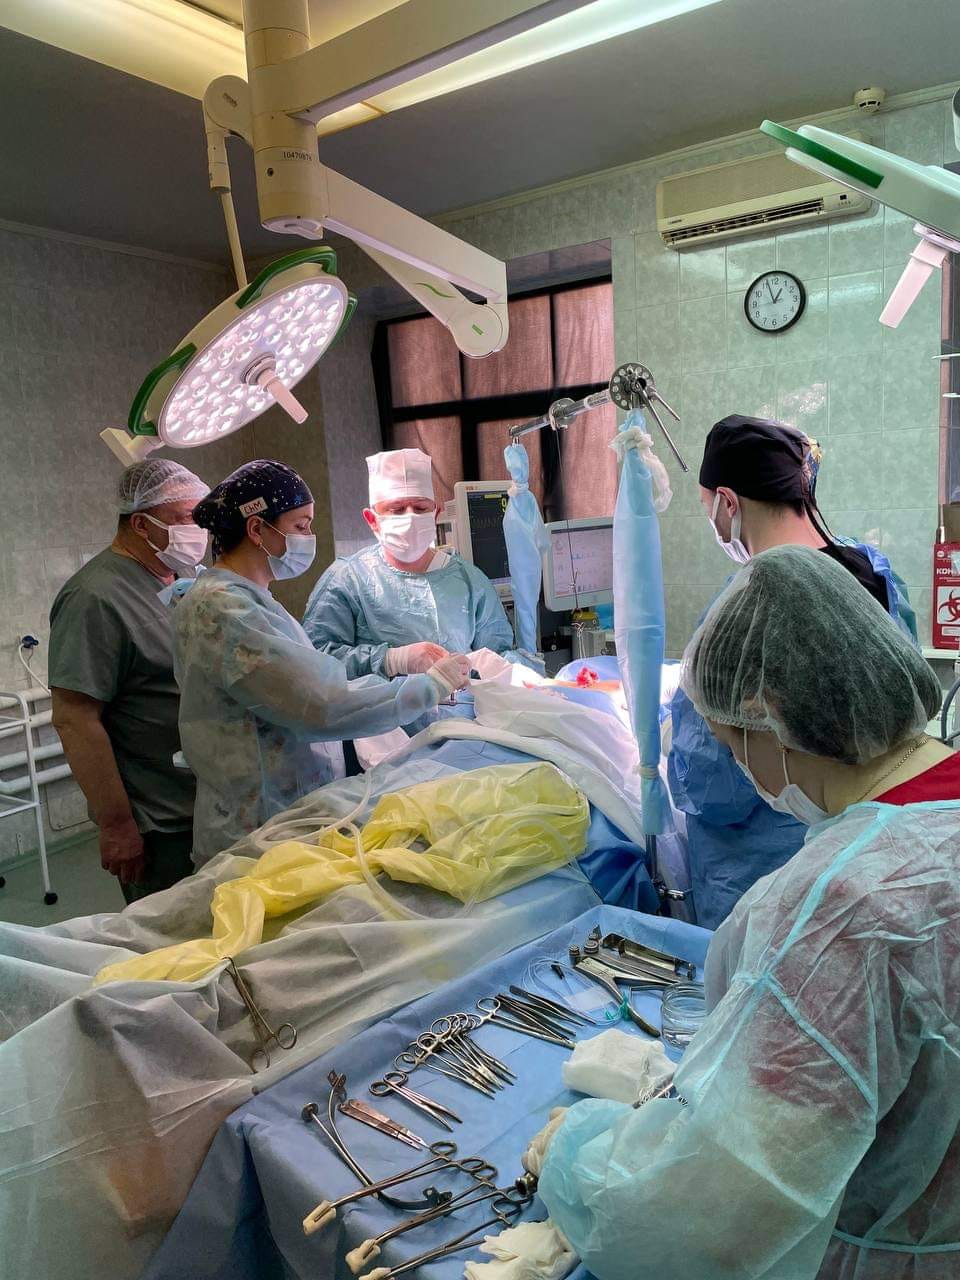 Група медичних фахівців готова провести операцію, на фото видно операційну залу.